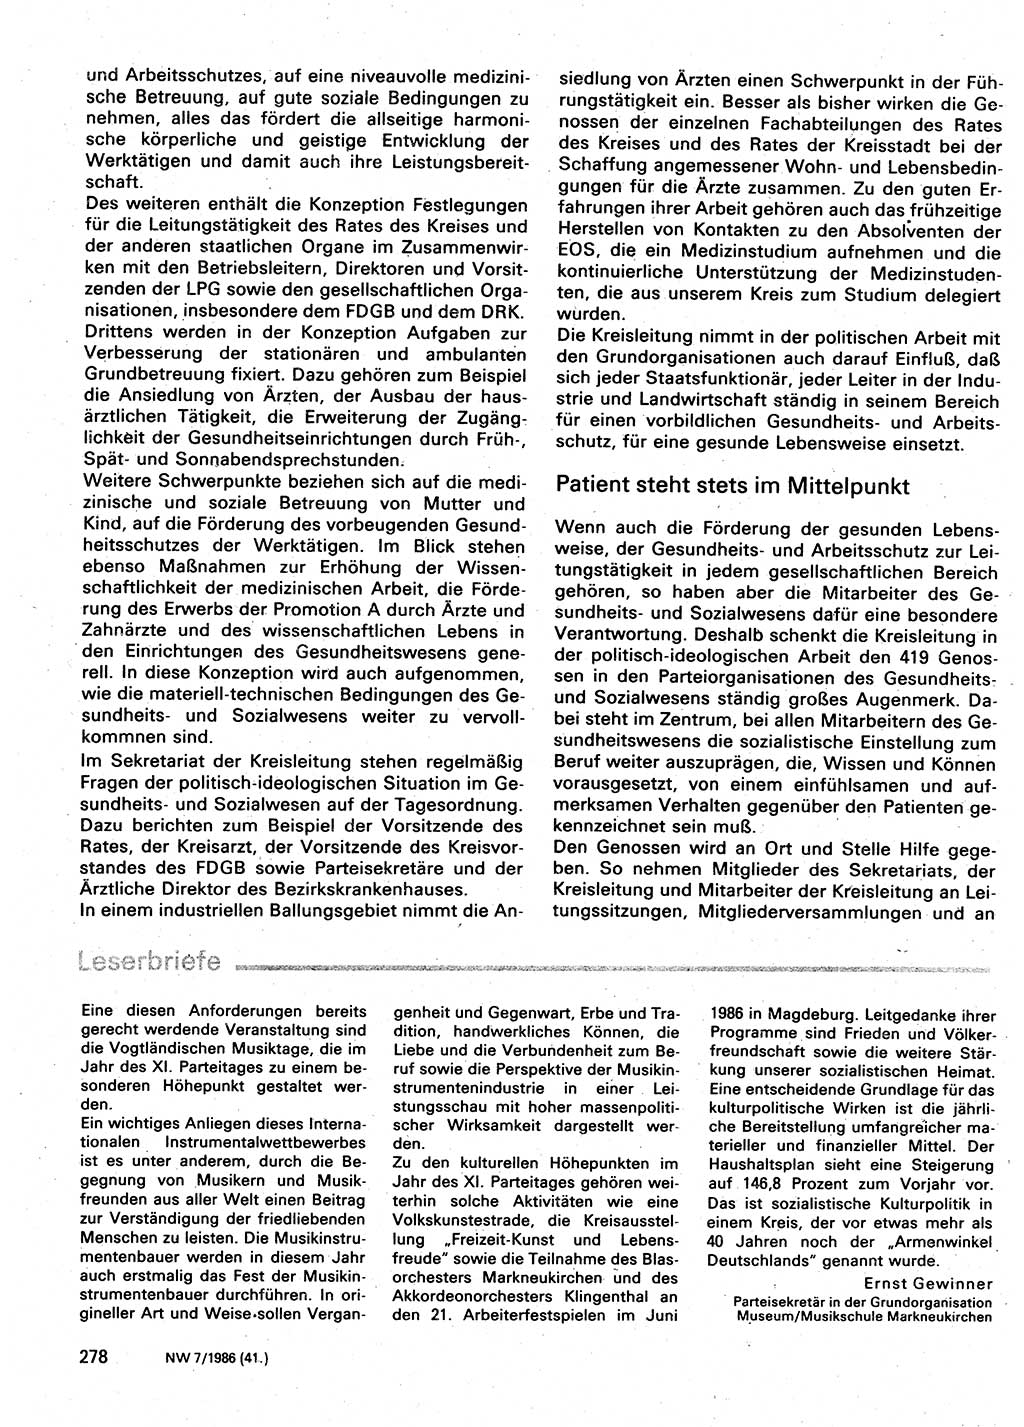 Neuer Weg (NW), Organ des Zentralkomitees (ZK) der SED (Sozialistische Einheitspartei Deutschlands) für Fragen des Parteilebens, 41. Jahrgang [Deutsche Demokratische Republik (DDR)] 1986, Seite 278 (NW ZK SED DDR 1986, S. 278)